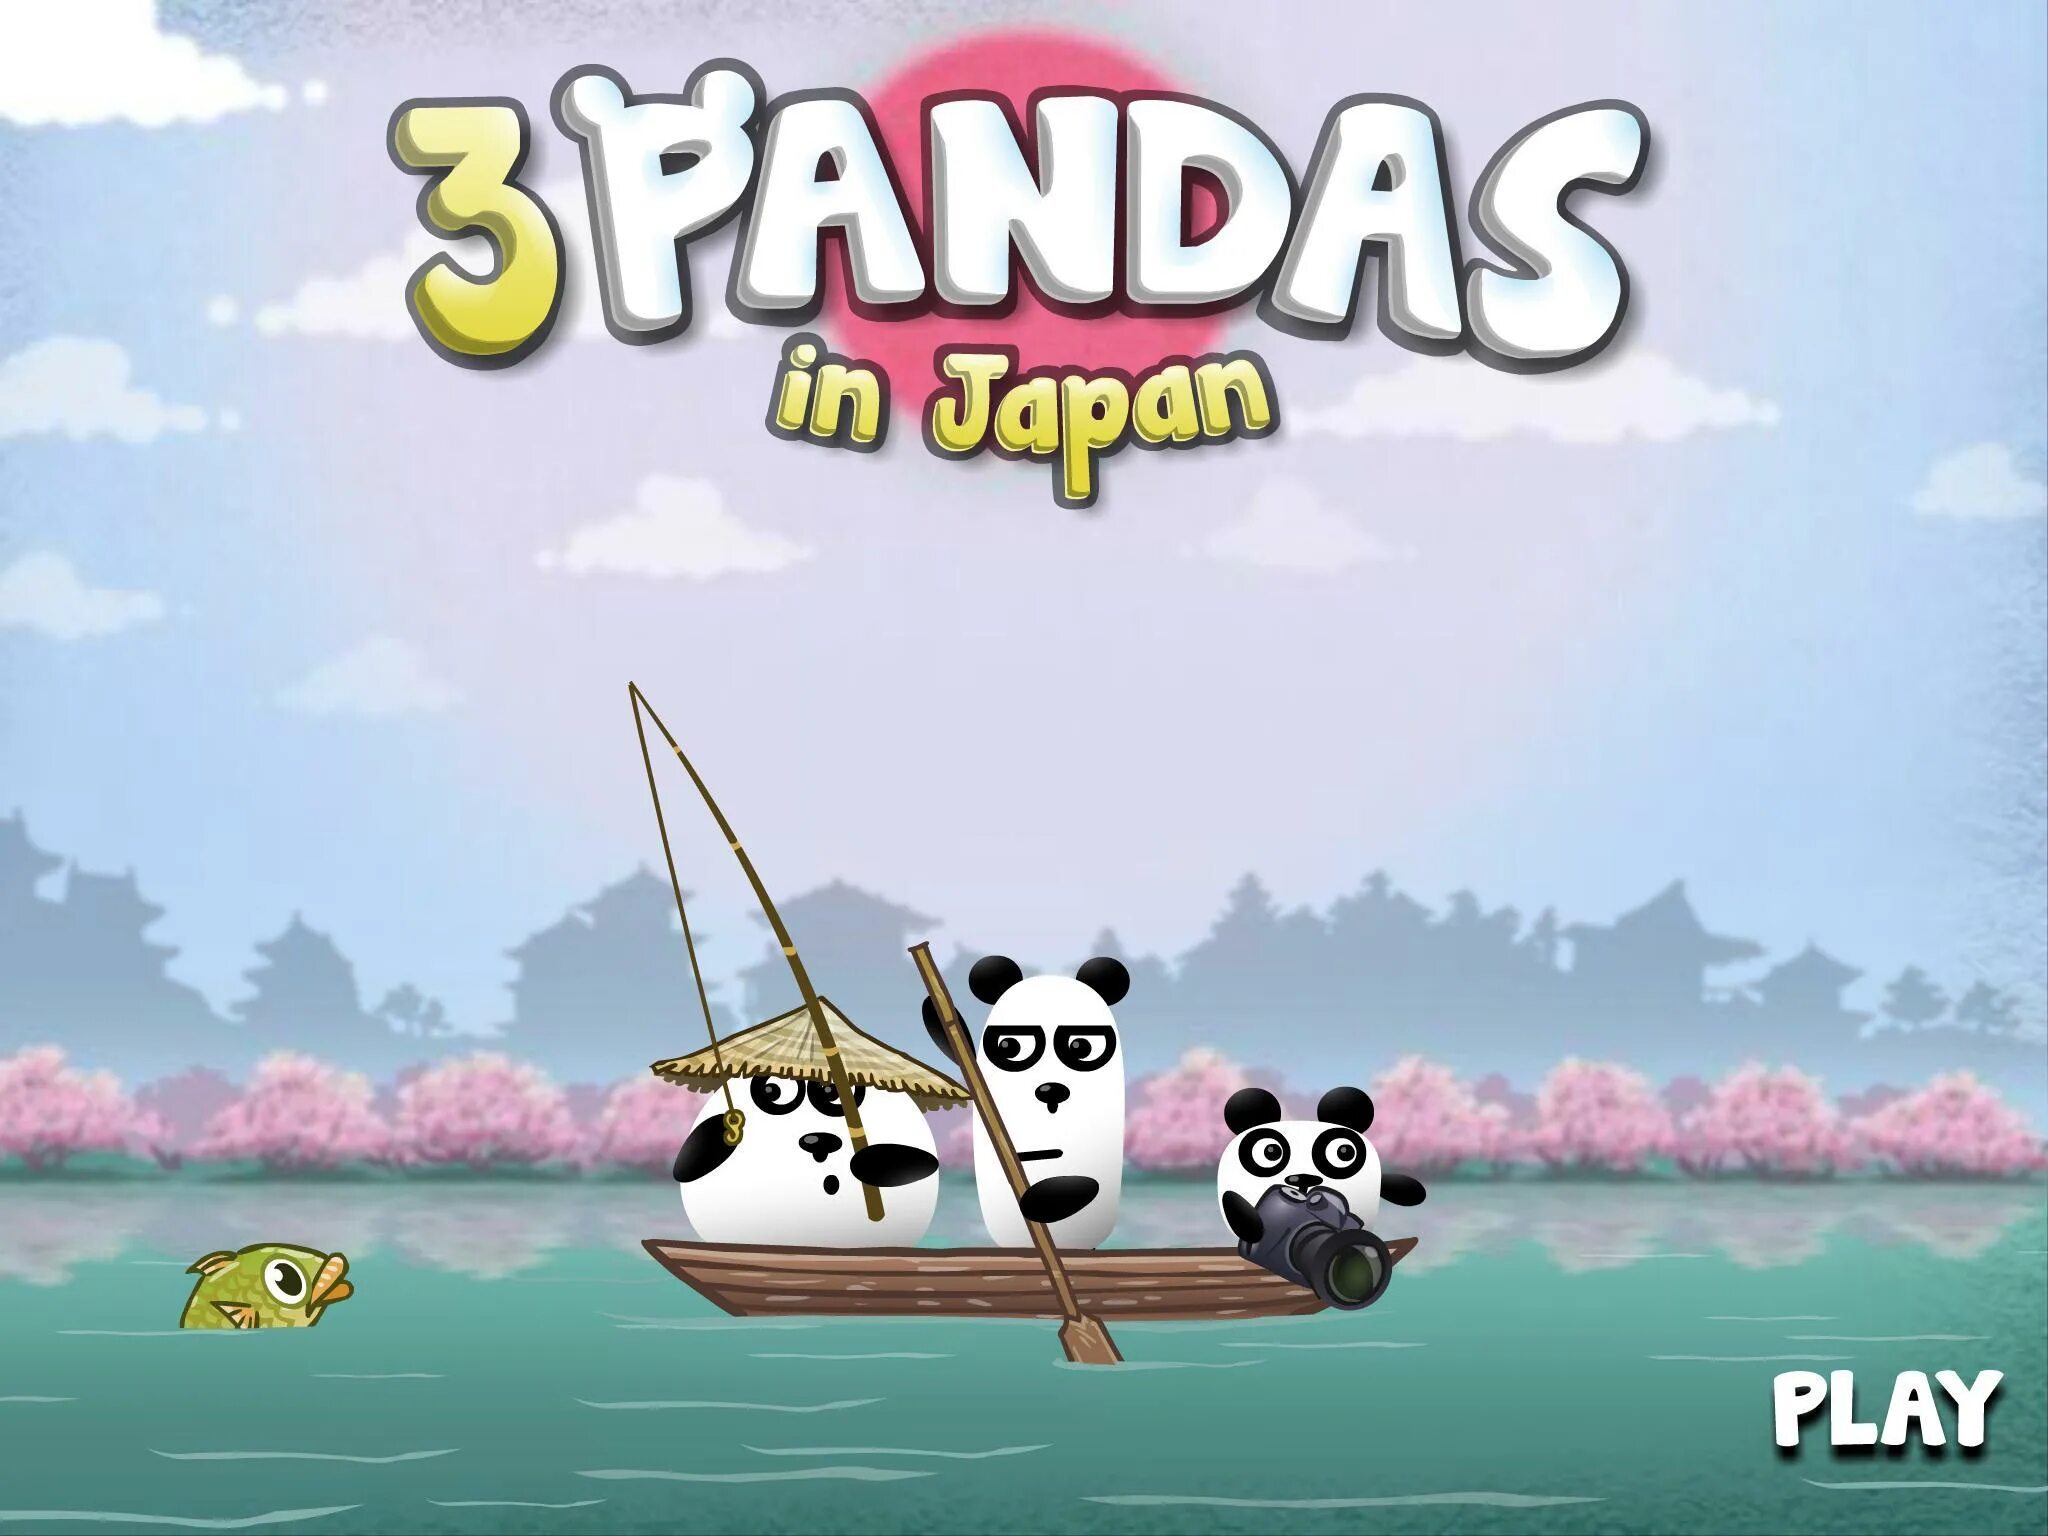 3 Панды игра. Игра три панды 1. Игра 3 панды игра 3 панды игра. Игра три панды в Японии. Panda games игры